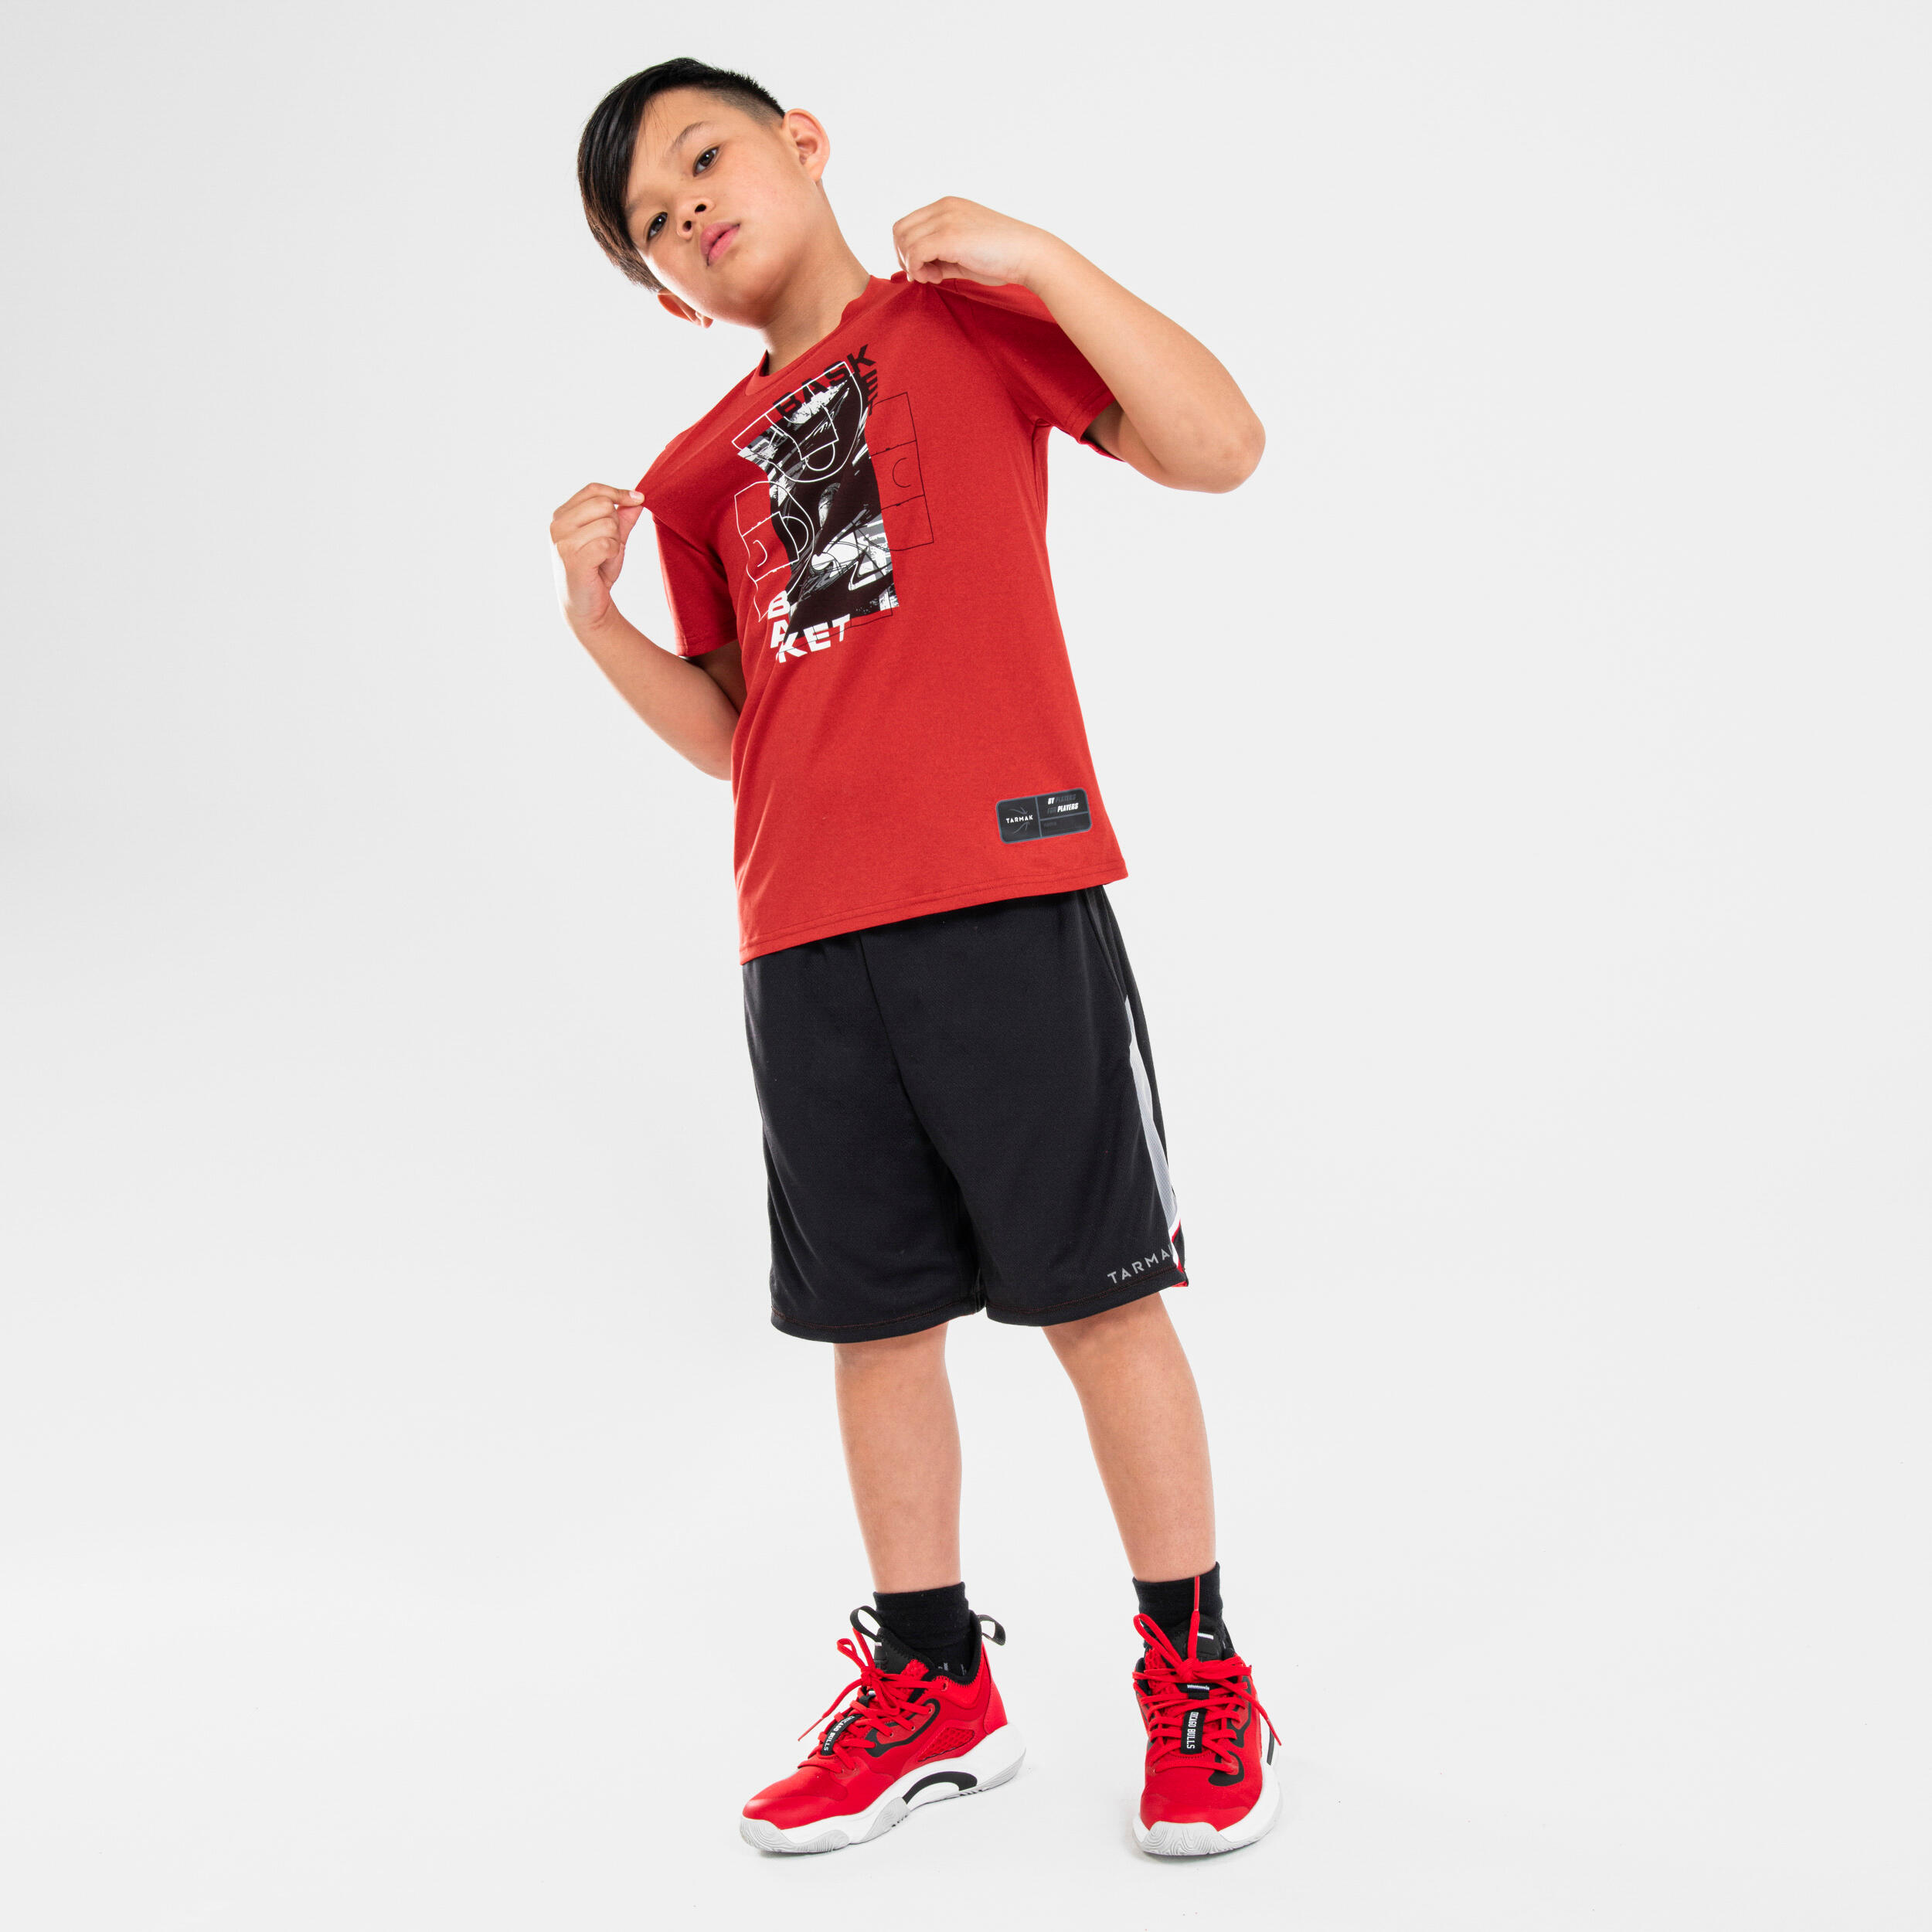 Kids' Basketball T-Shirt / Jersey TS500 Fast - Red 6/6